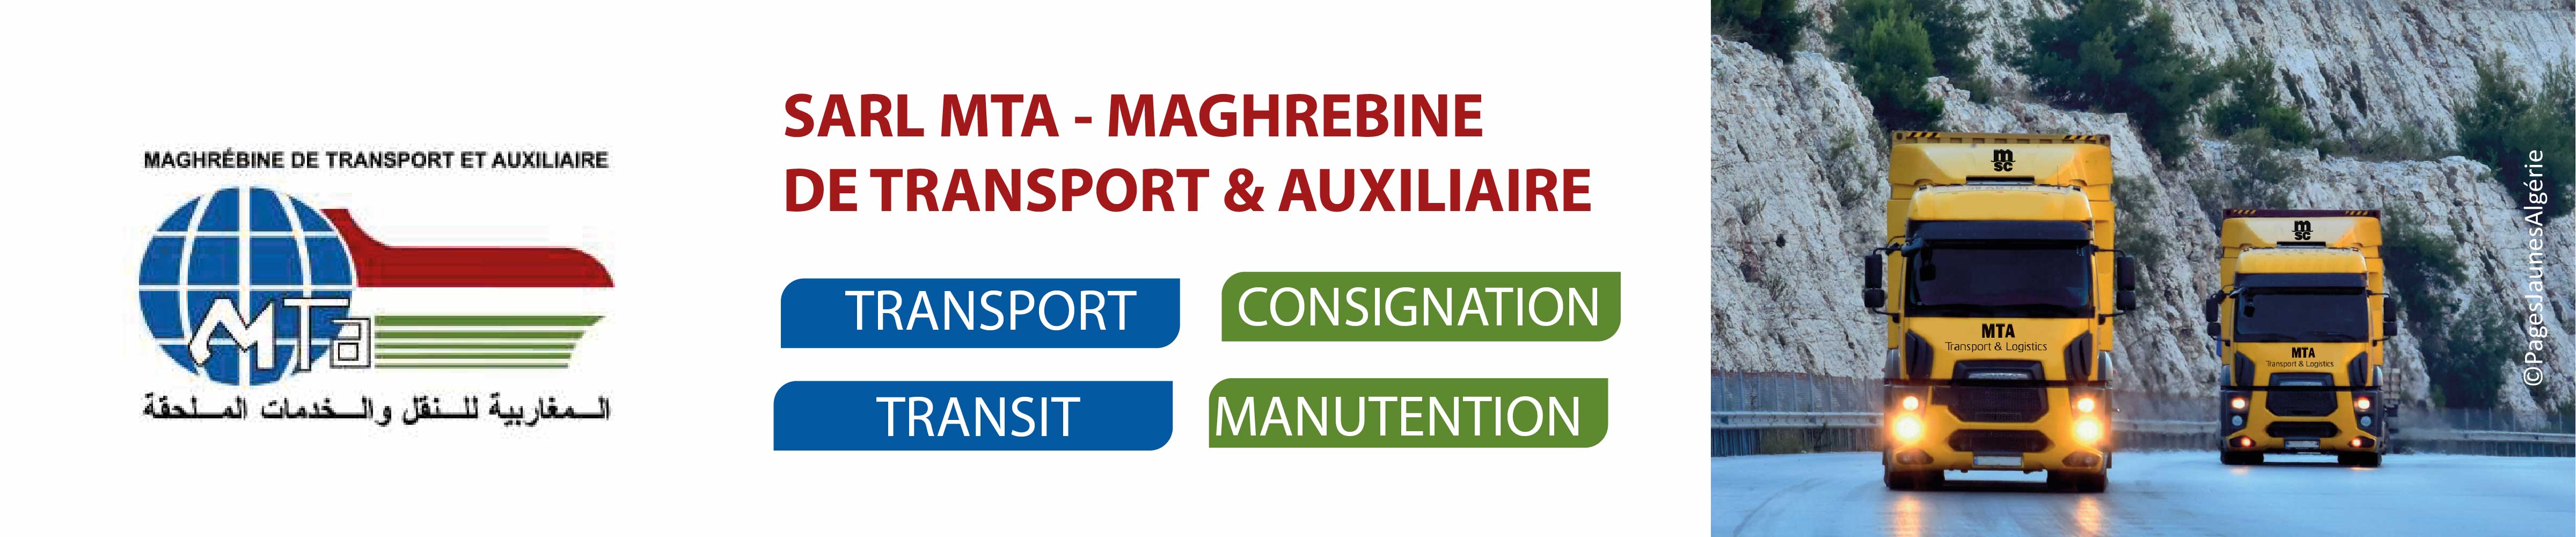 MAGHREBINE DE TRANSPORT & AUXILIAIRE